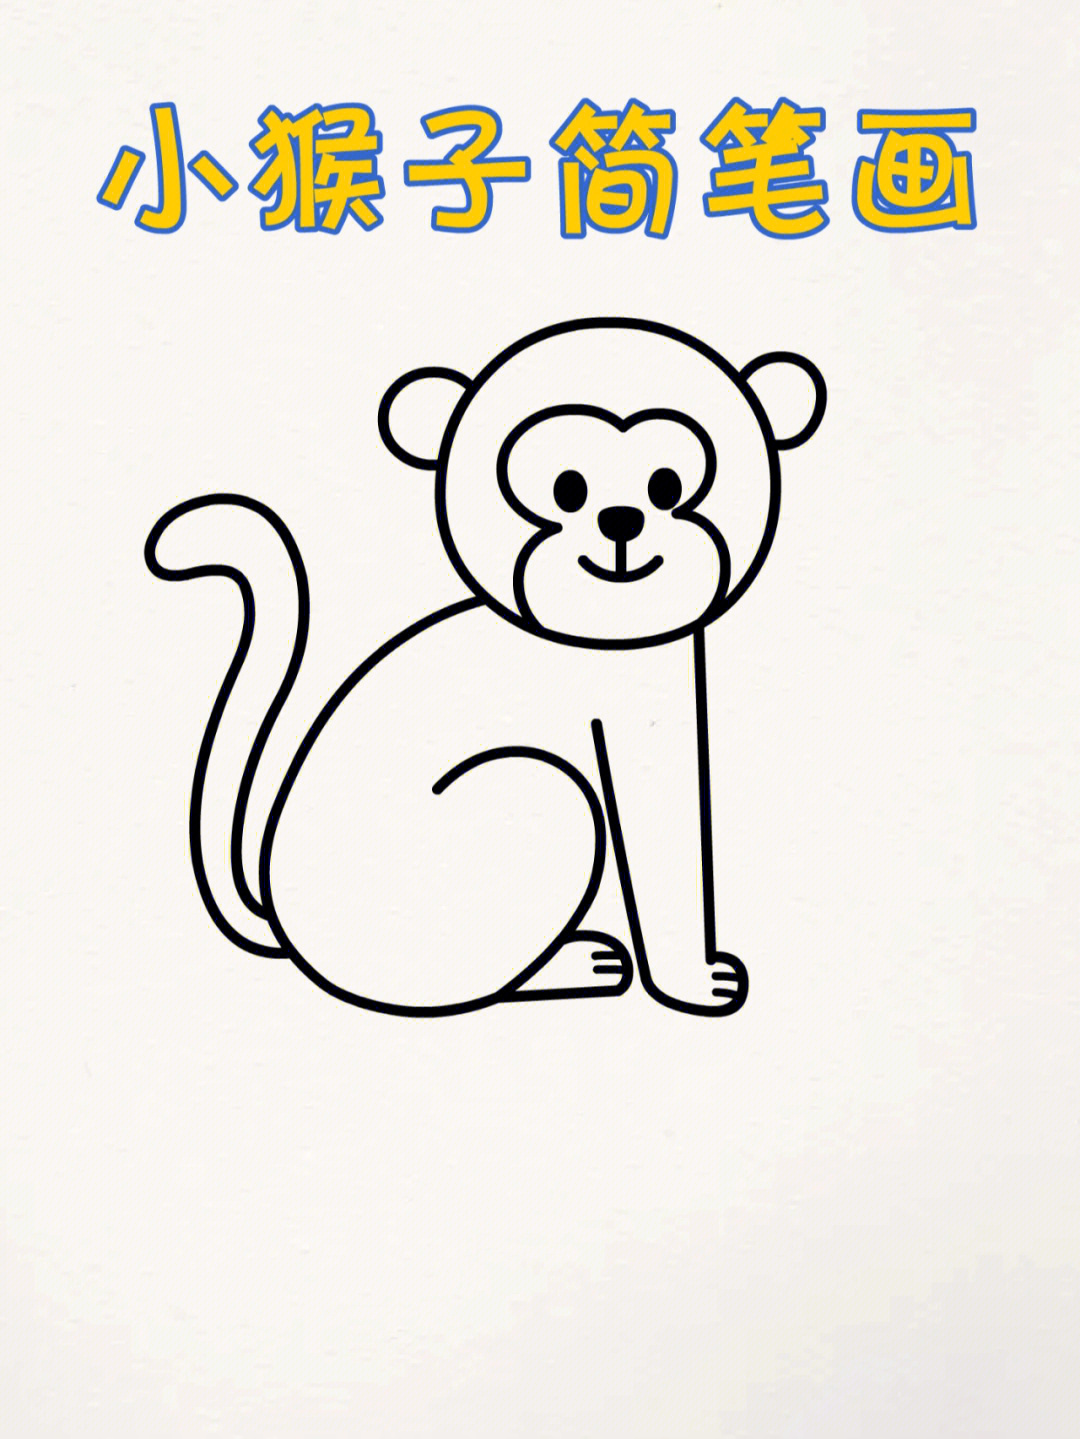 用数字画小猴子简笔画你能学会吗